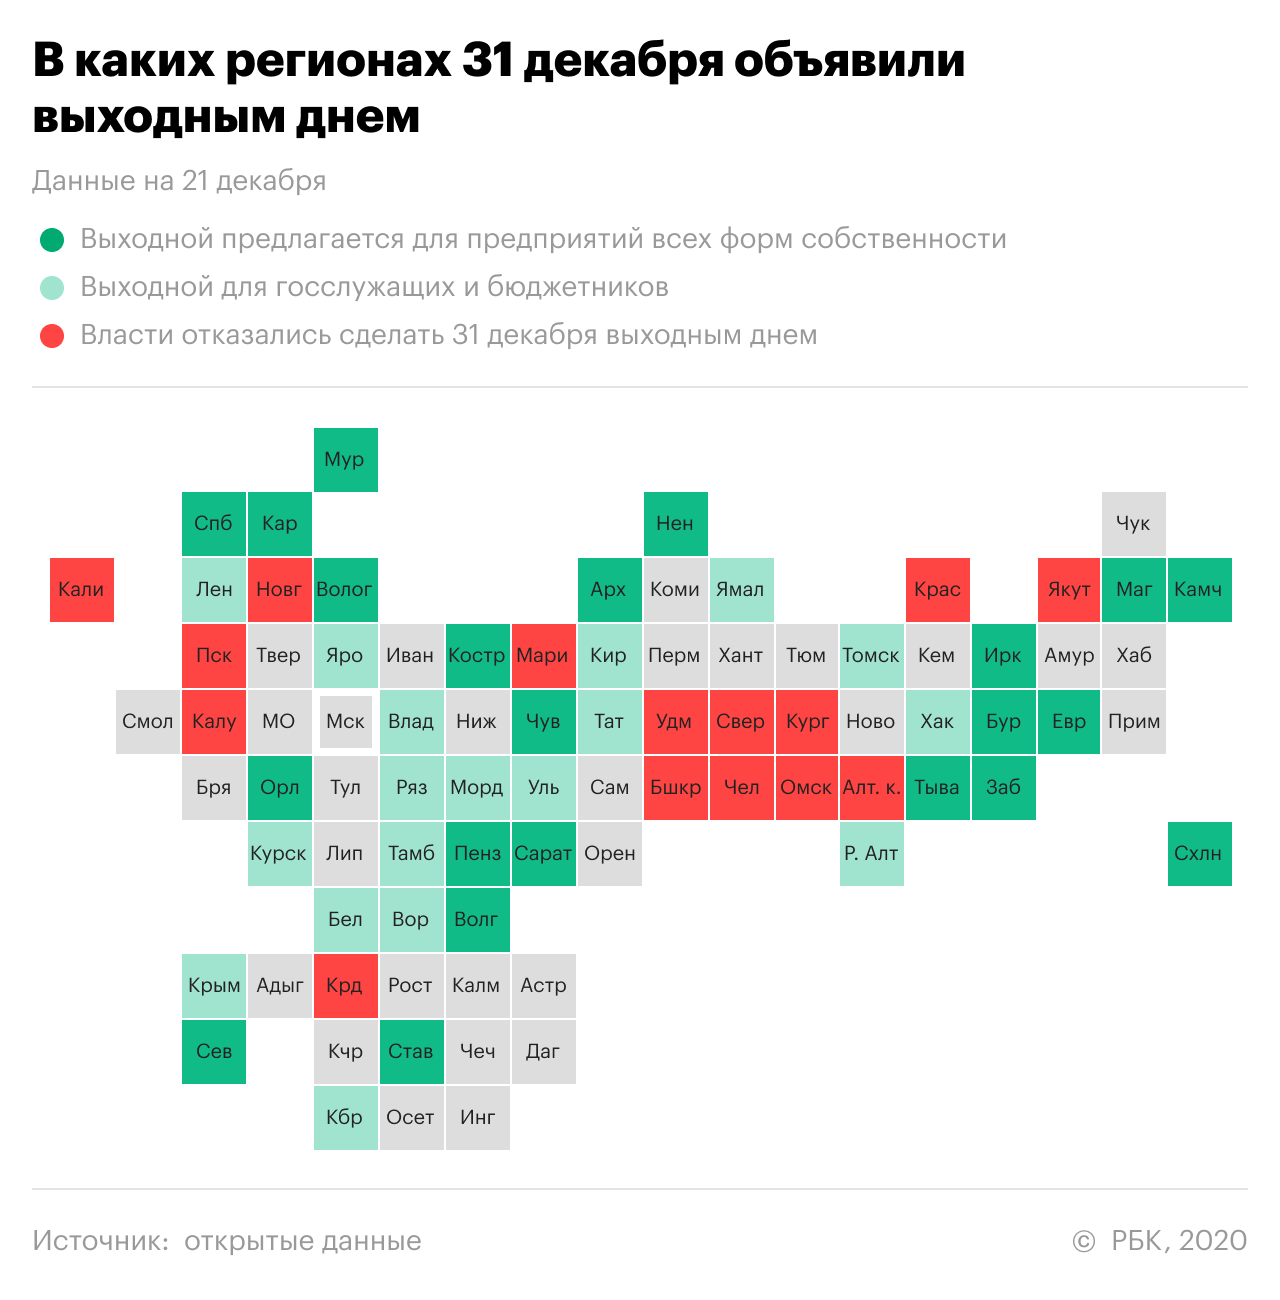 Власти Ямала объявили 31 декабря выходным днем